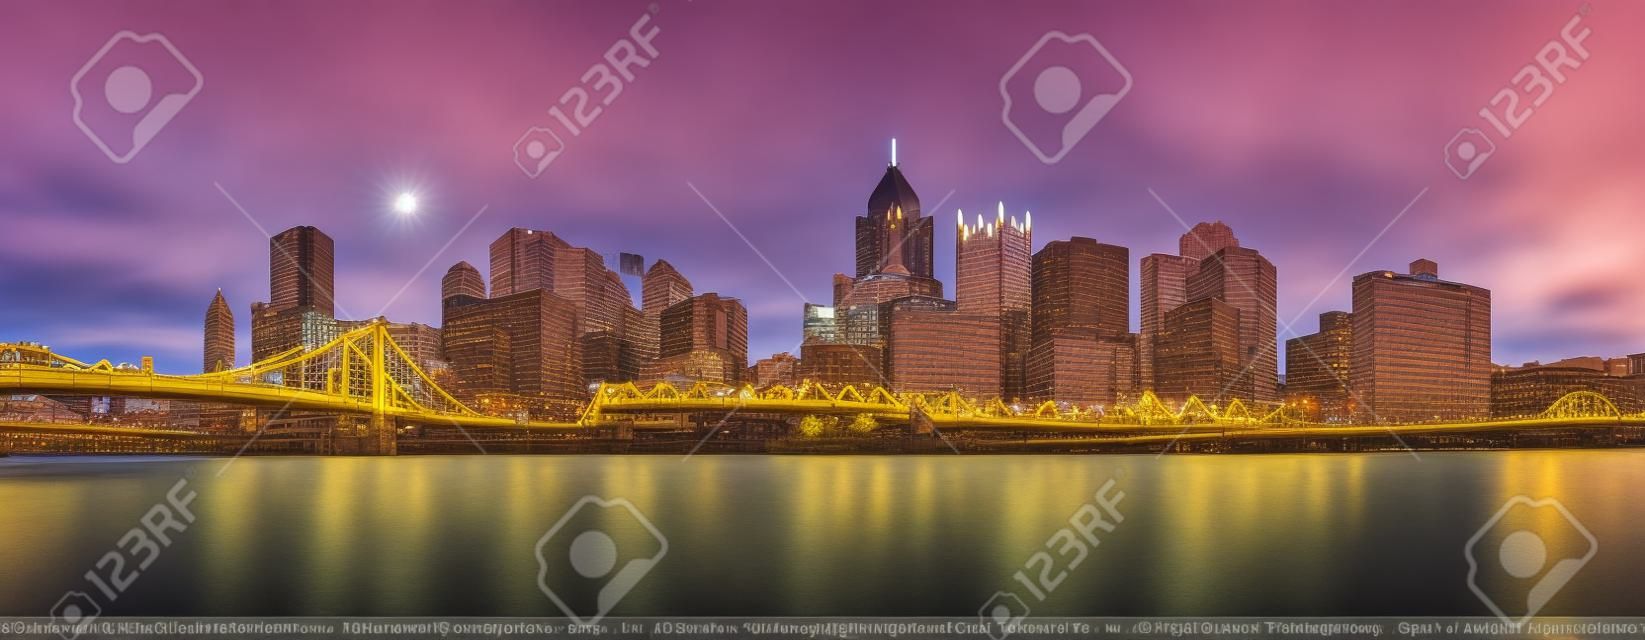 Lange blootstelling van Pittsburgh downtown skyline en Roberto Clemente brug, op een zonnige middag, zoals bekeken vanaf North Shore Riverfront Park, over Allegheny River.